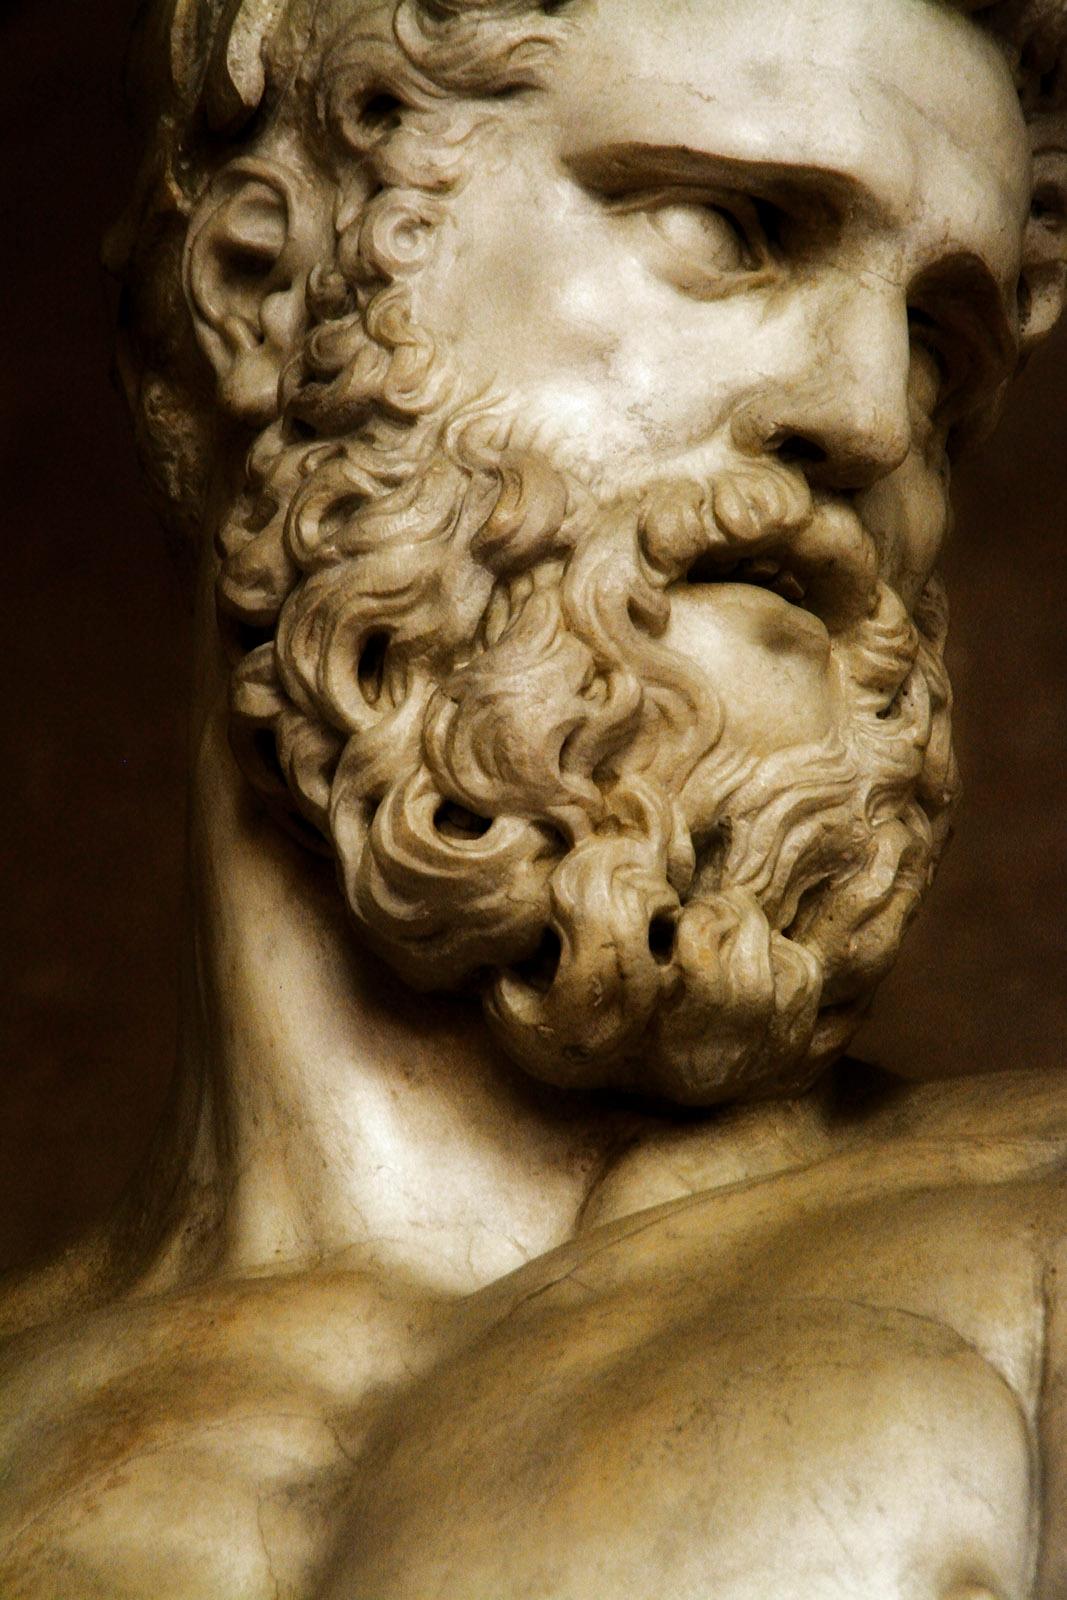 Italien 4- Pigmentdruck in limitierter Auflage, Goldlicht, Skulptur, griechische Mythologie, Skulptur